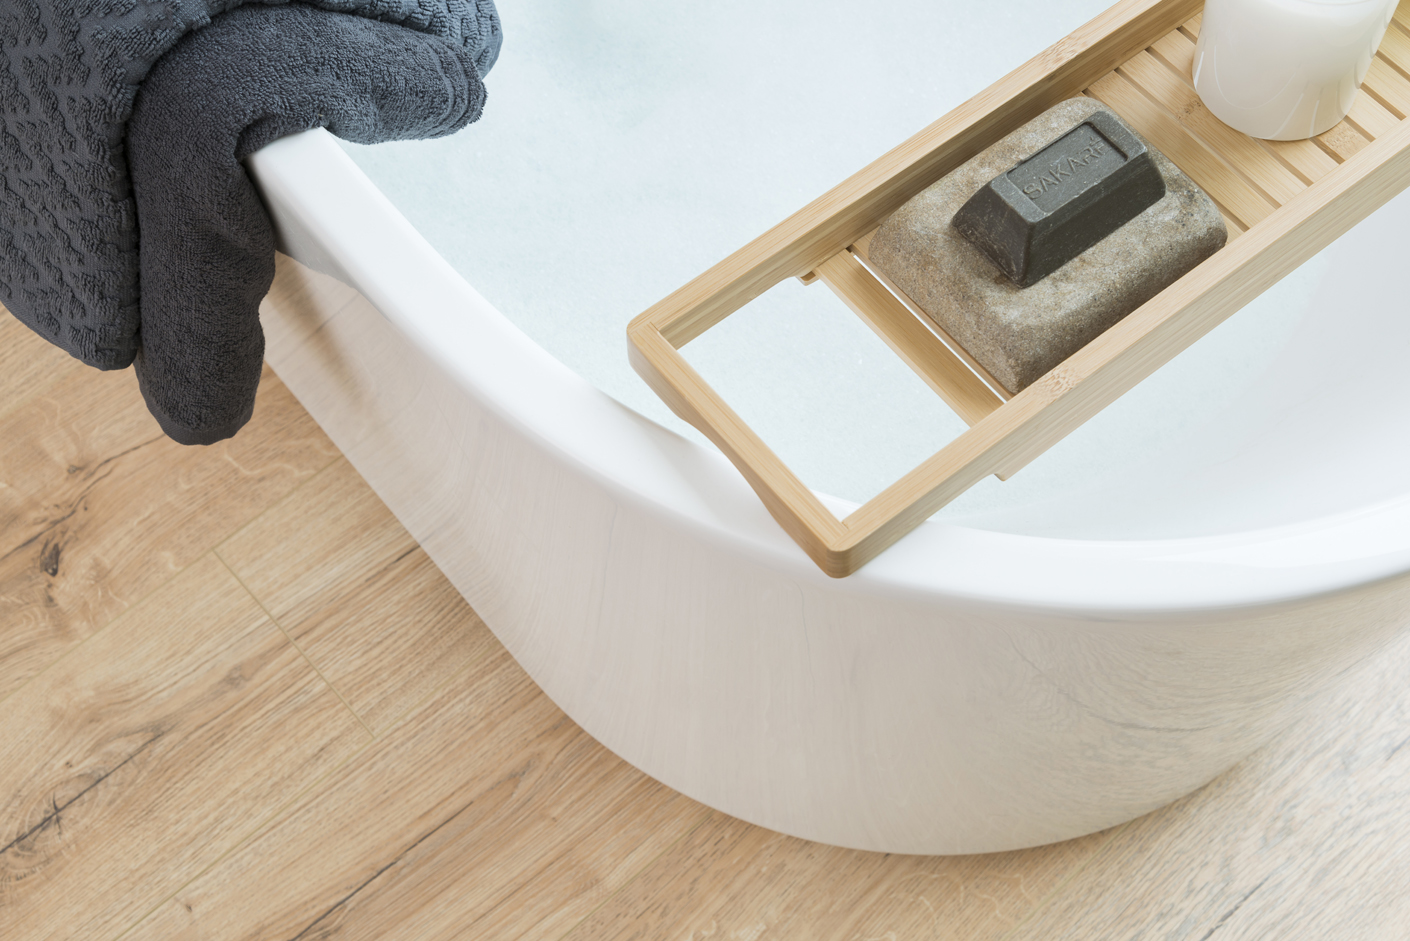 Water Resistant Bathroom, Water Resistant Coating For Laminate Flooring